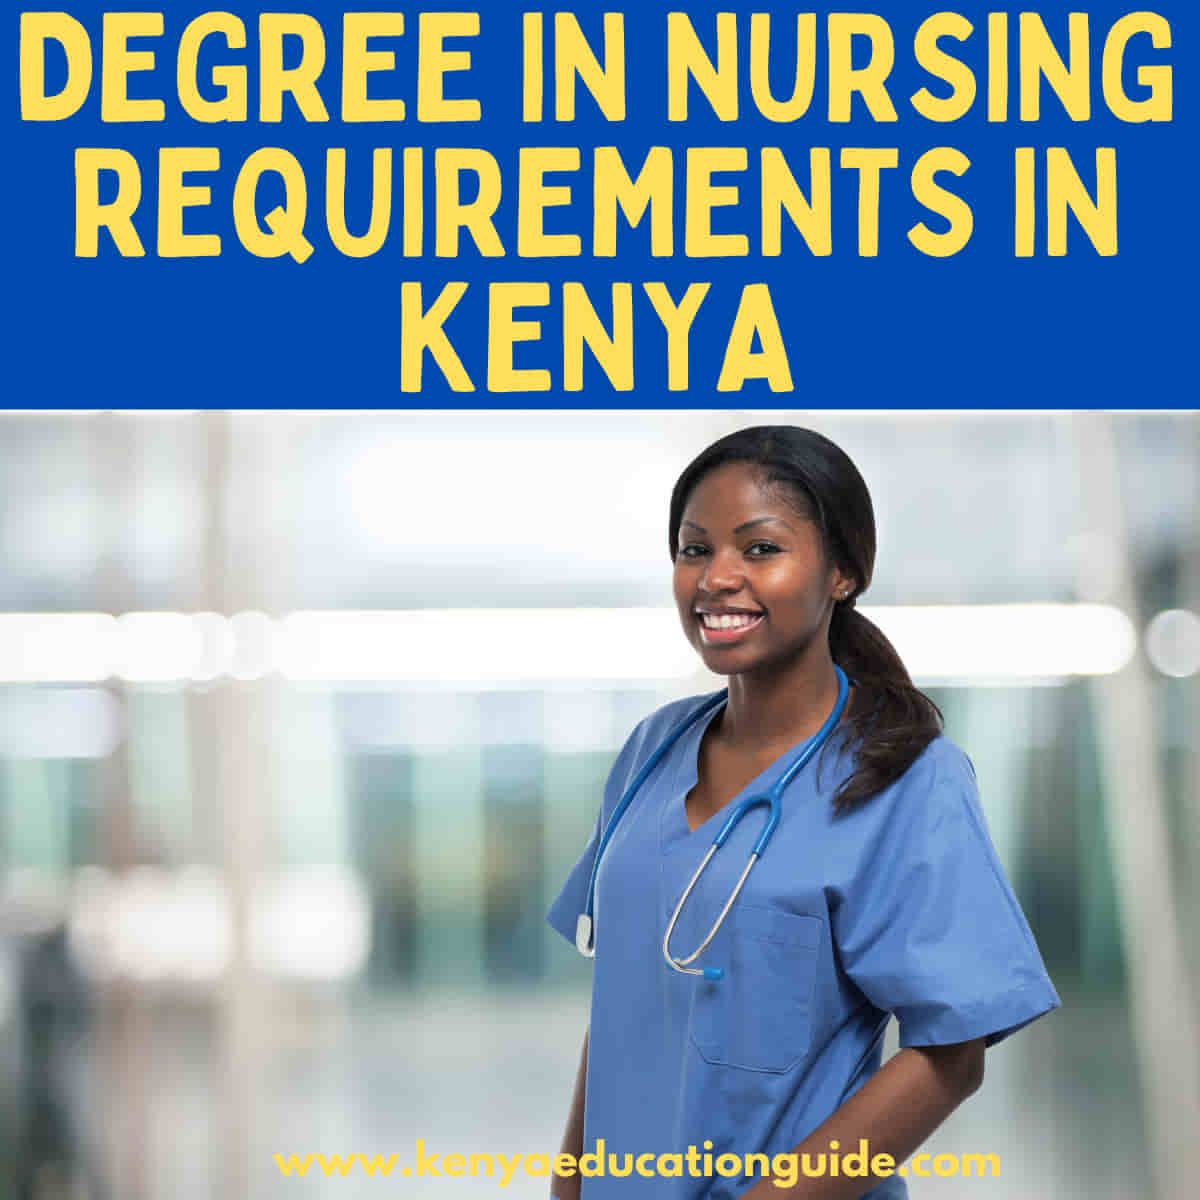 Degree in nursing requirements in Kenya